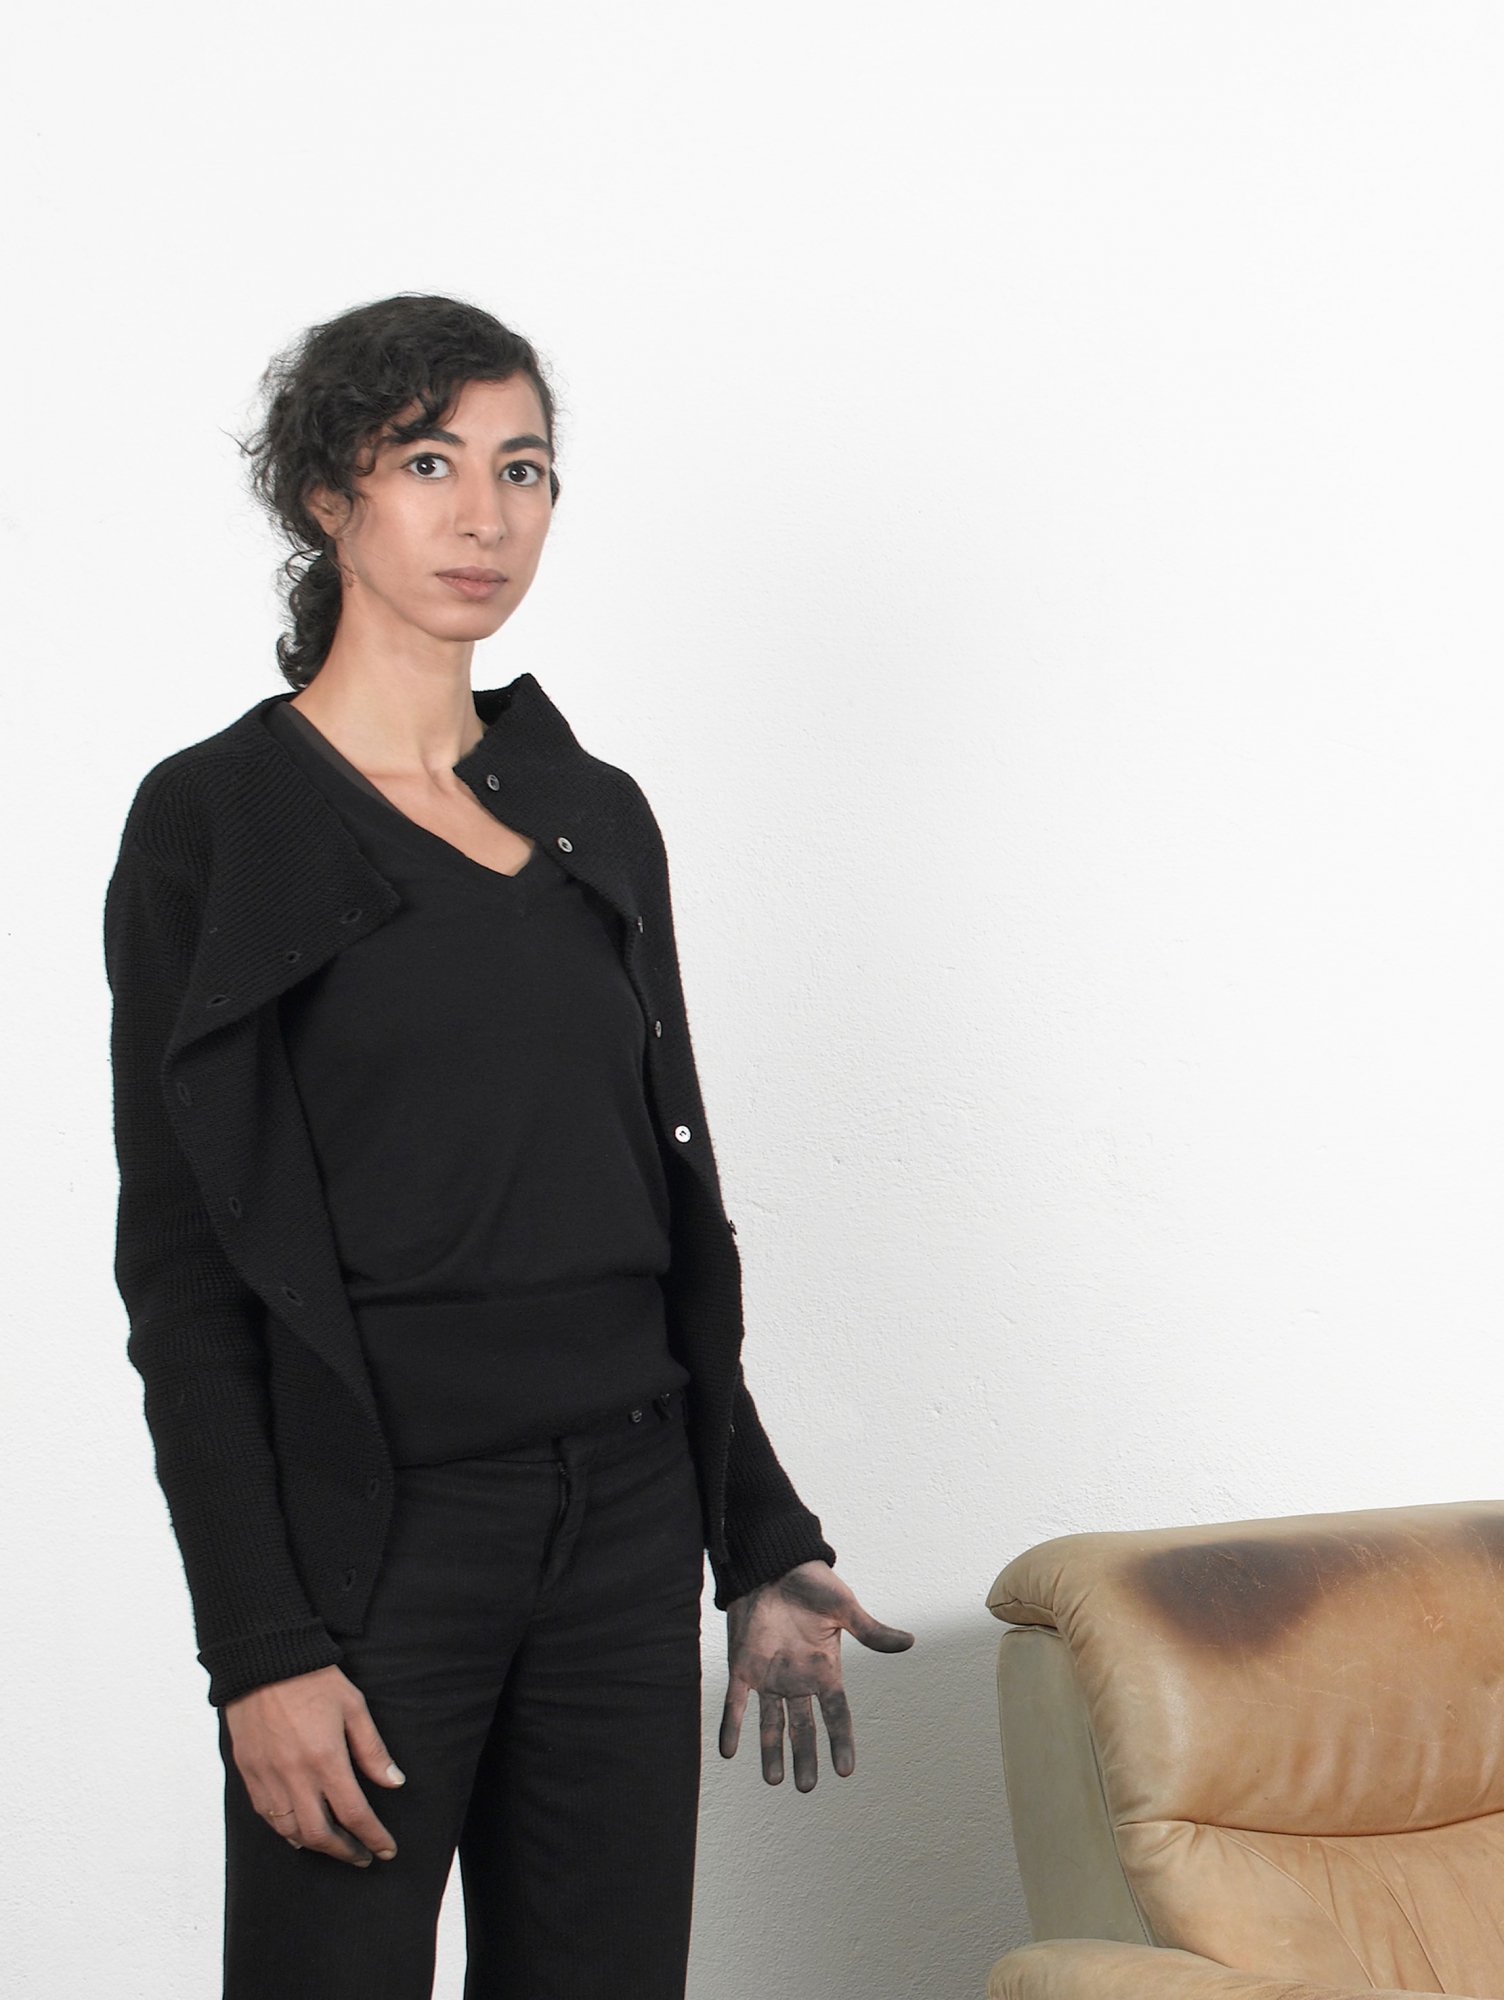 Latifa Echakhch est représentée aujourd’hui par quatre galeries: Kamel Mennour à Paris, Kaufmann Repetto à Milan, Dvir à Tel-Aviv et Eva Presenhuber à Zurich.